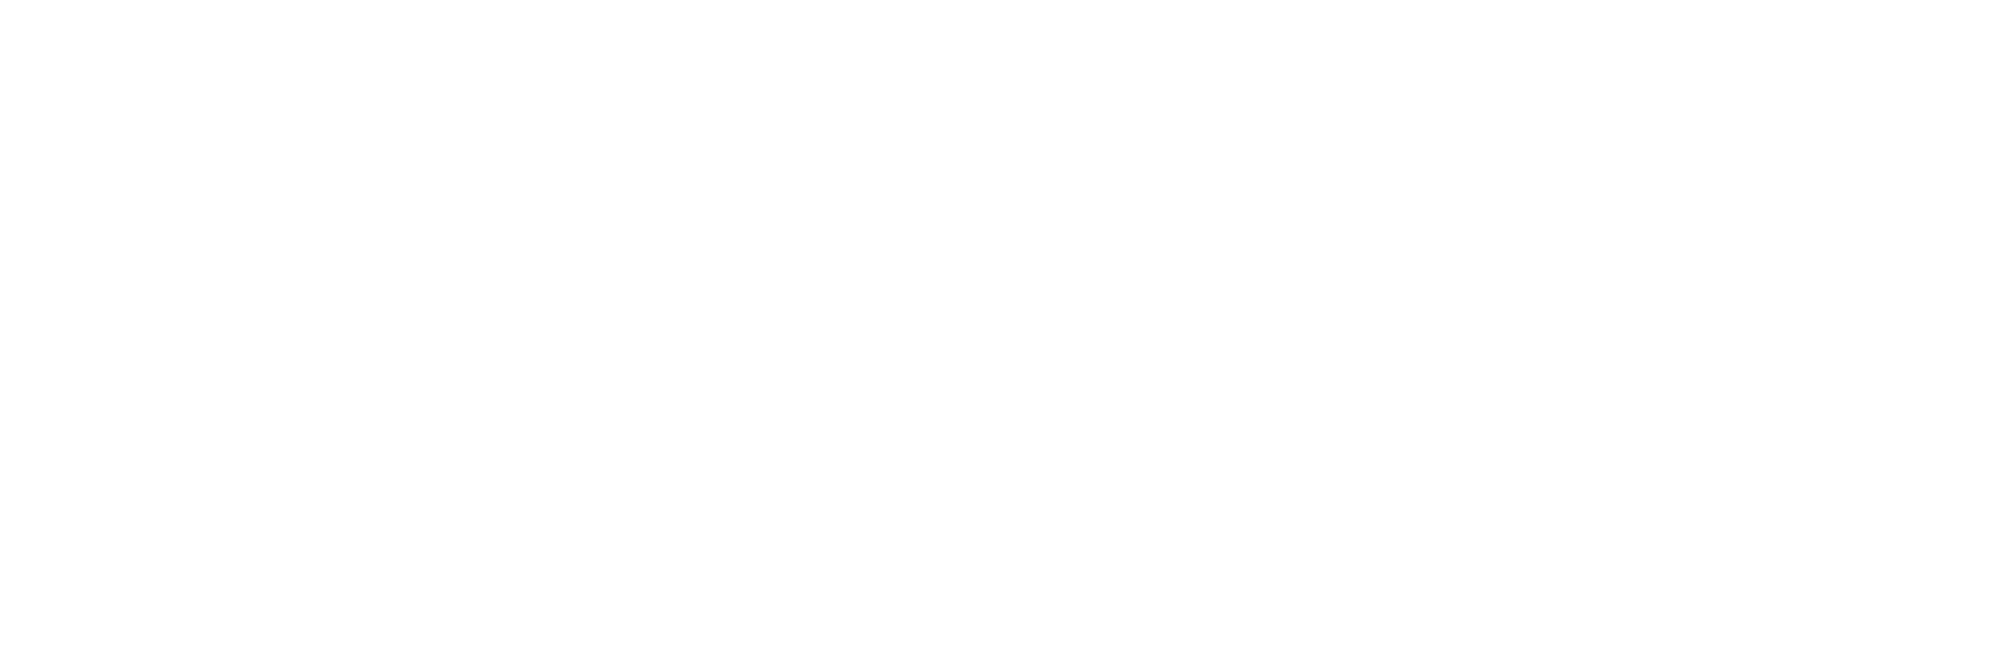 Matatalab_logo White